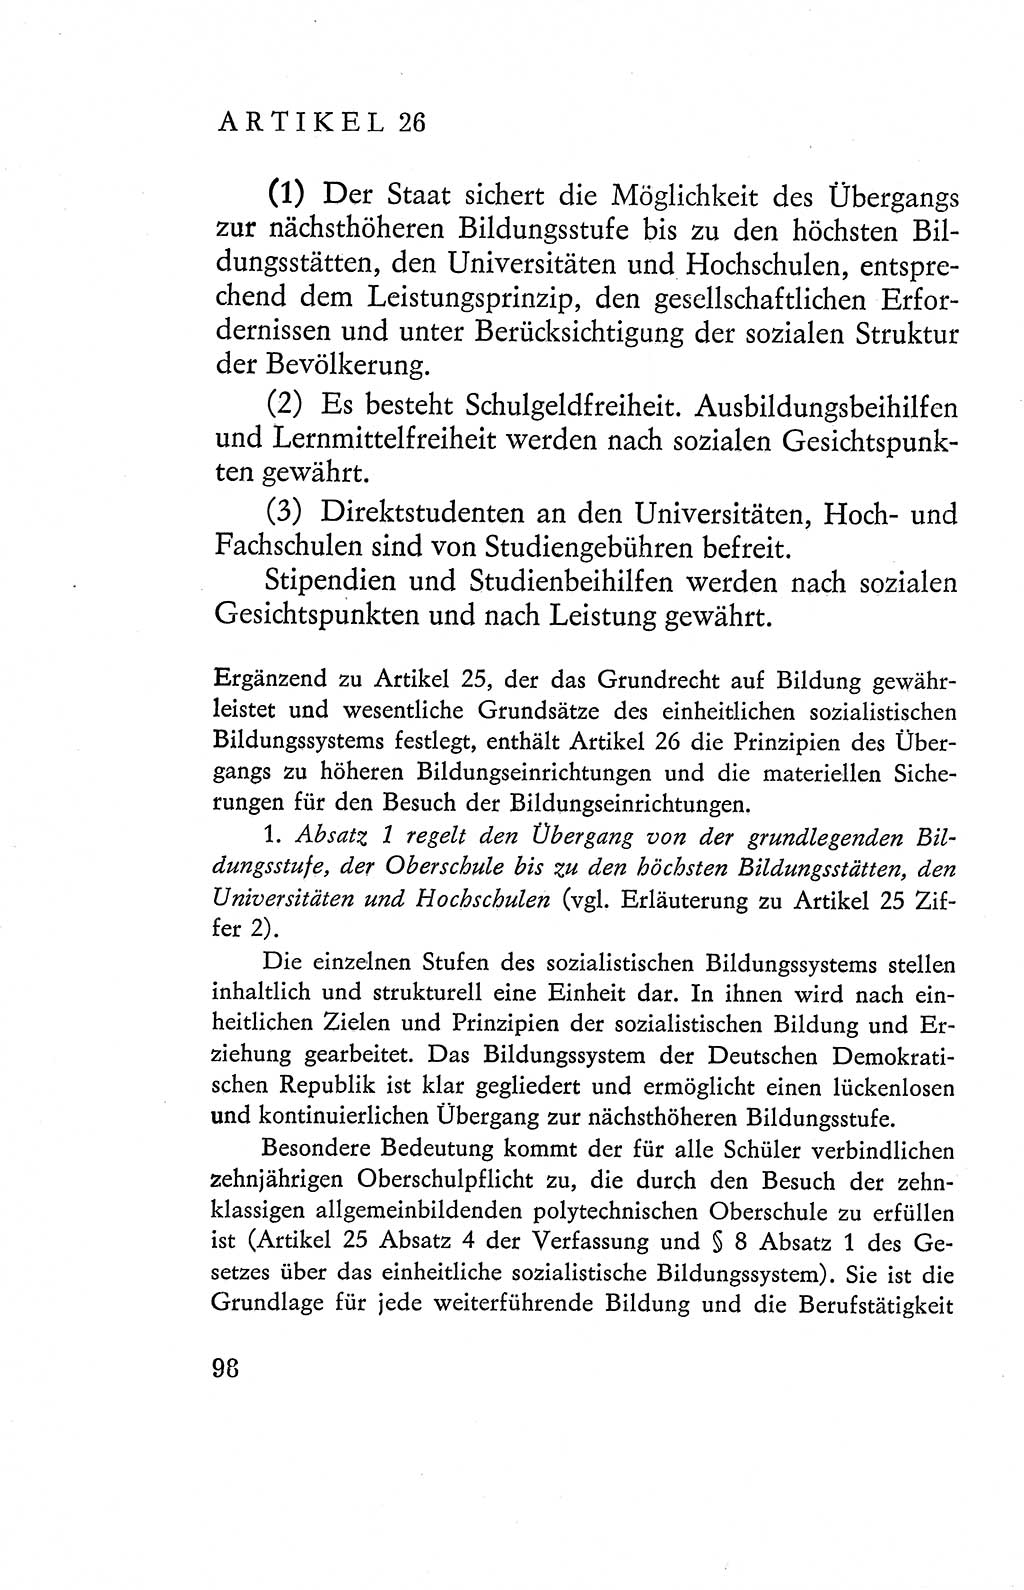 Verfassung der Deutschen Demokratischen Republik (DDR), Dokumente, Kommentar 1969, Band 2, Seite 98 (Verf. DDR Dok. Komm. 1969, Bd. 2, S. 98)